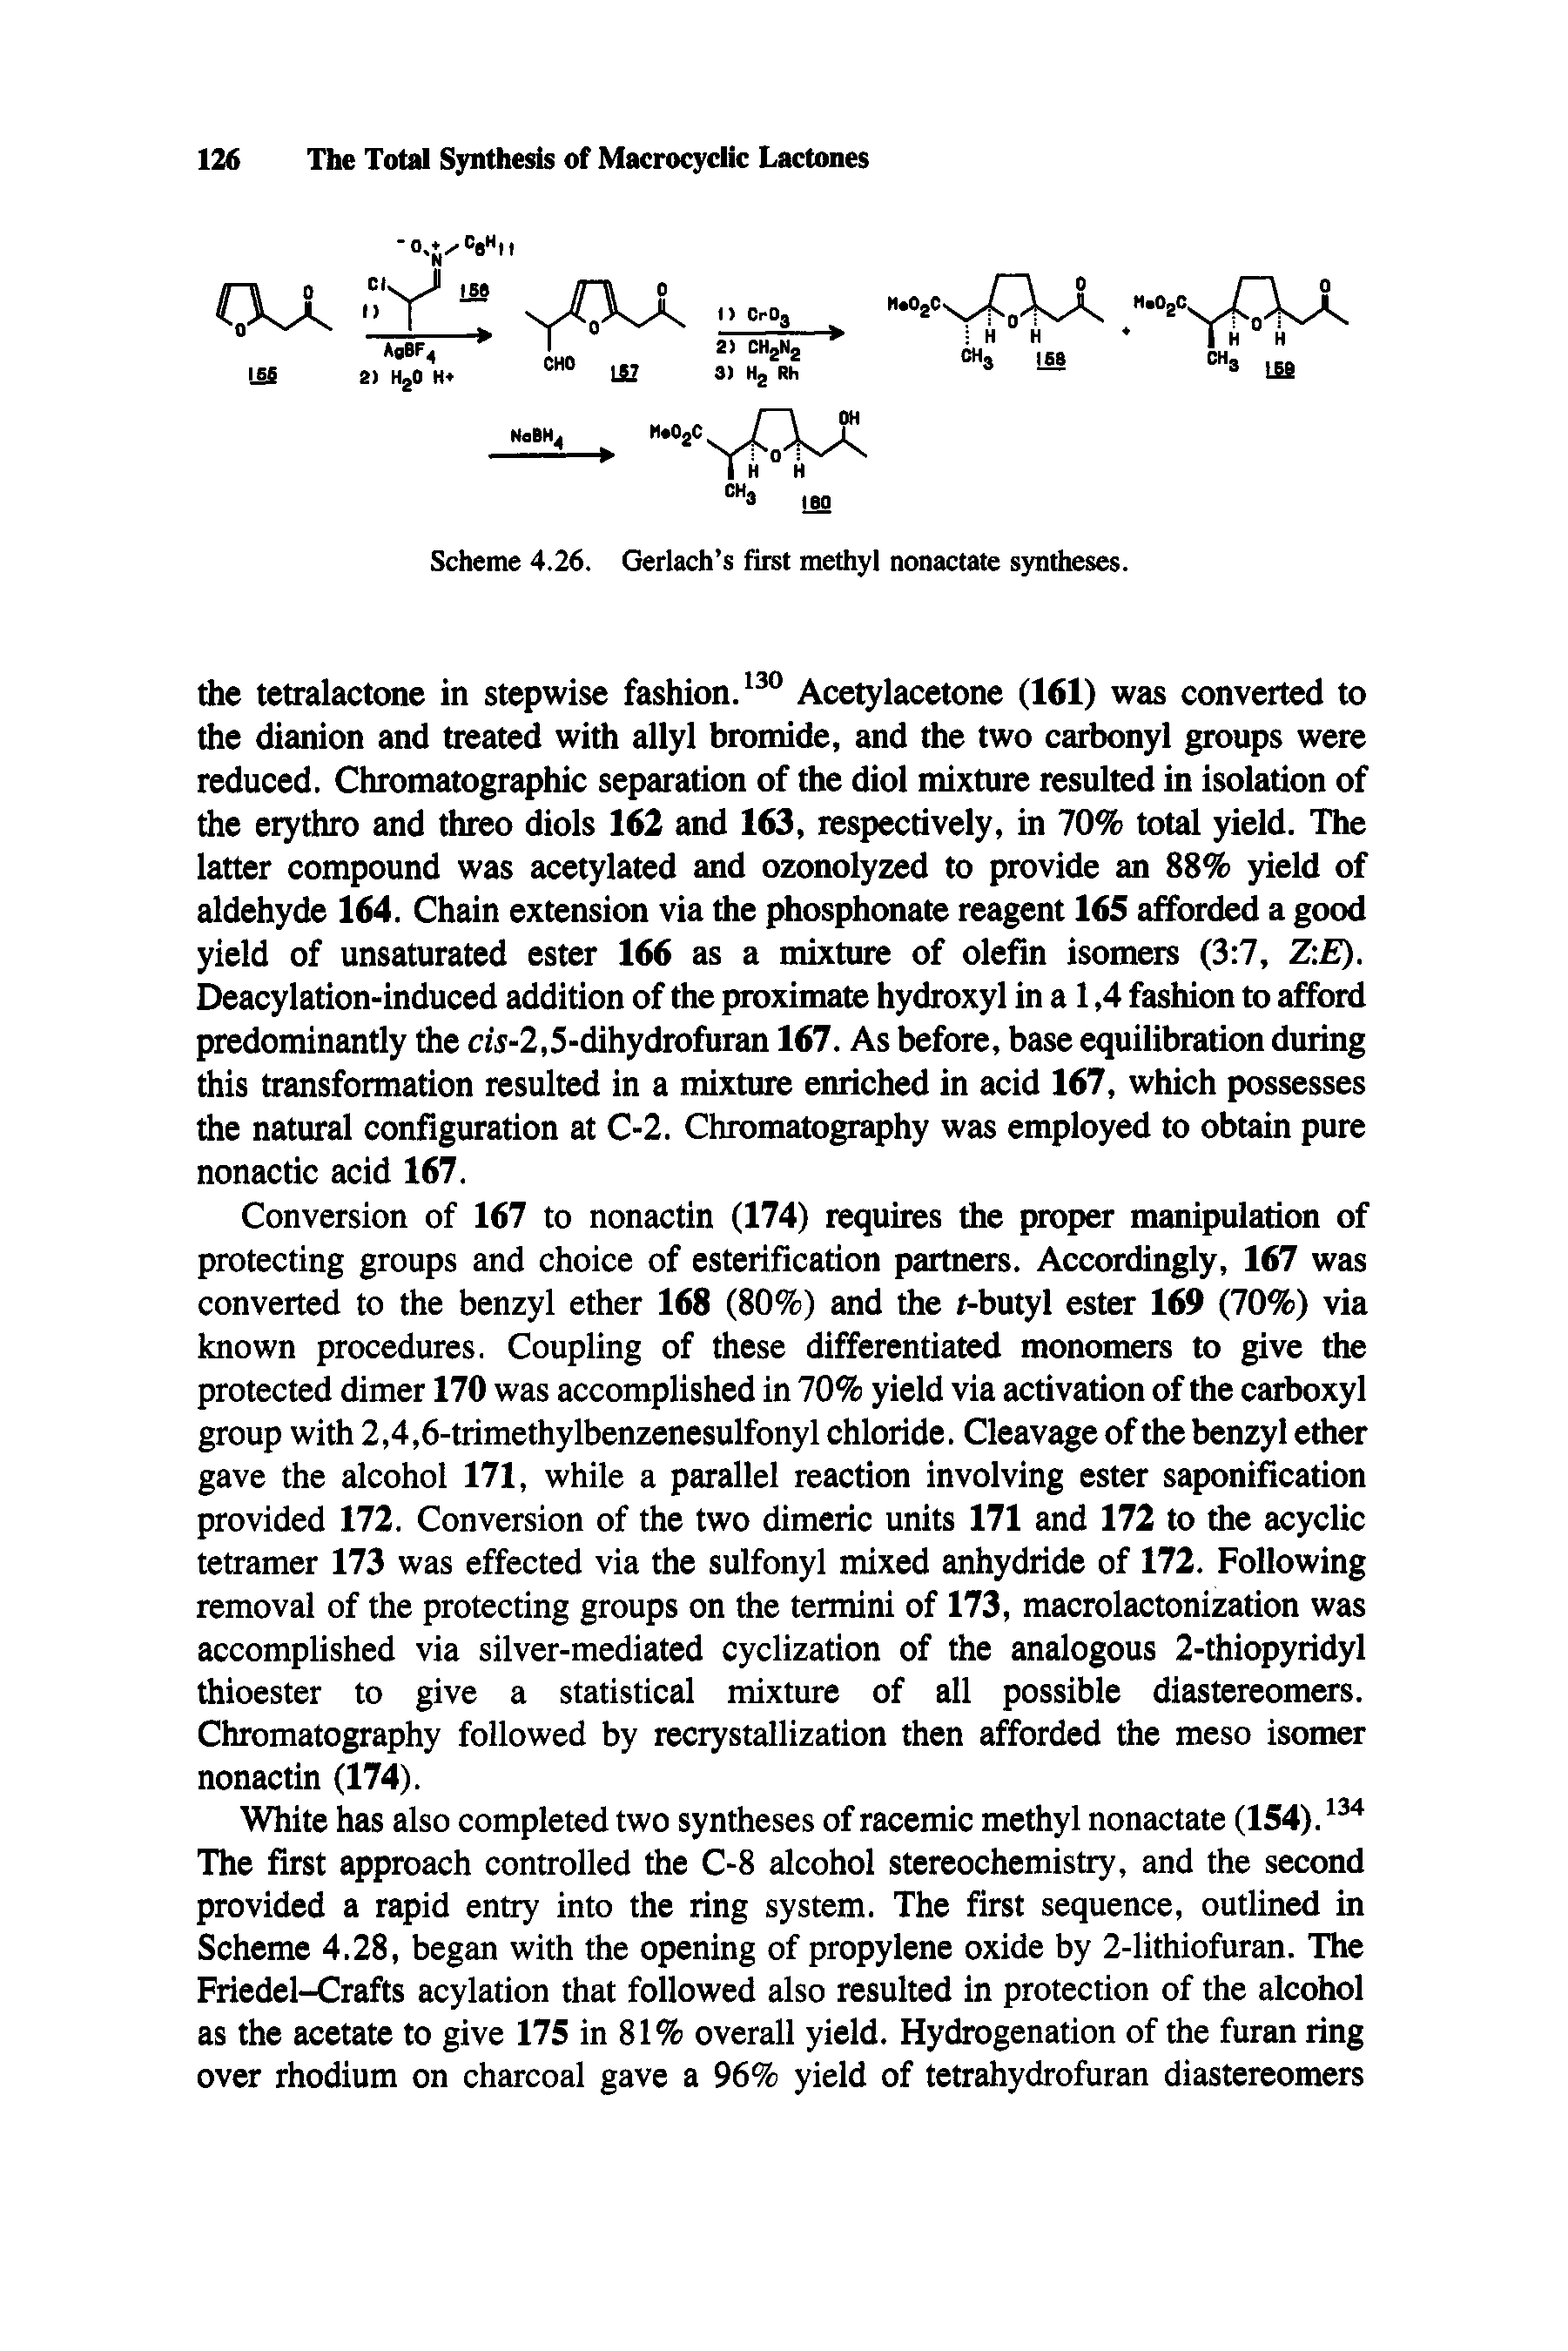 Scheme 4.26, Gerlach s first methyl nonactate syntheses.